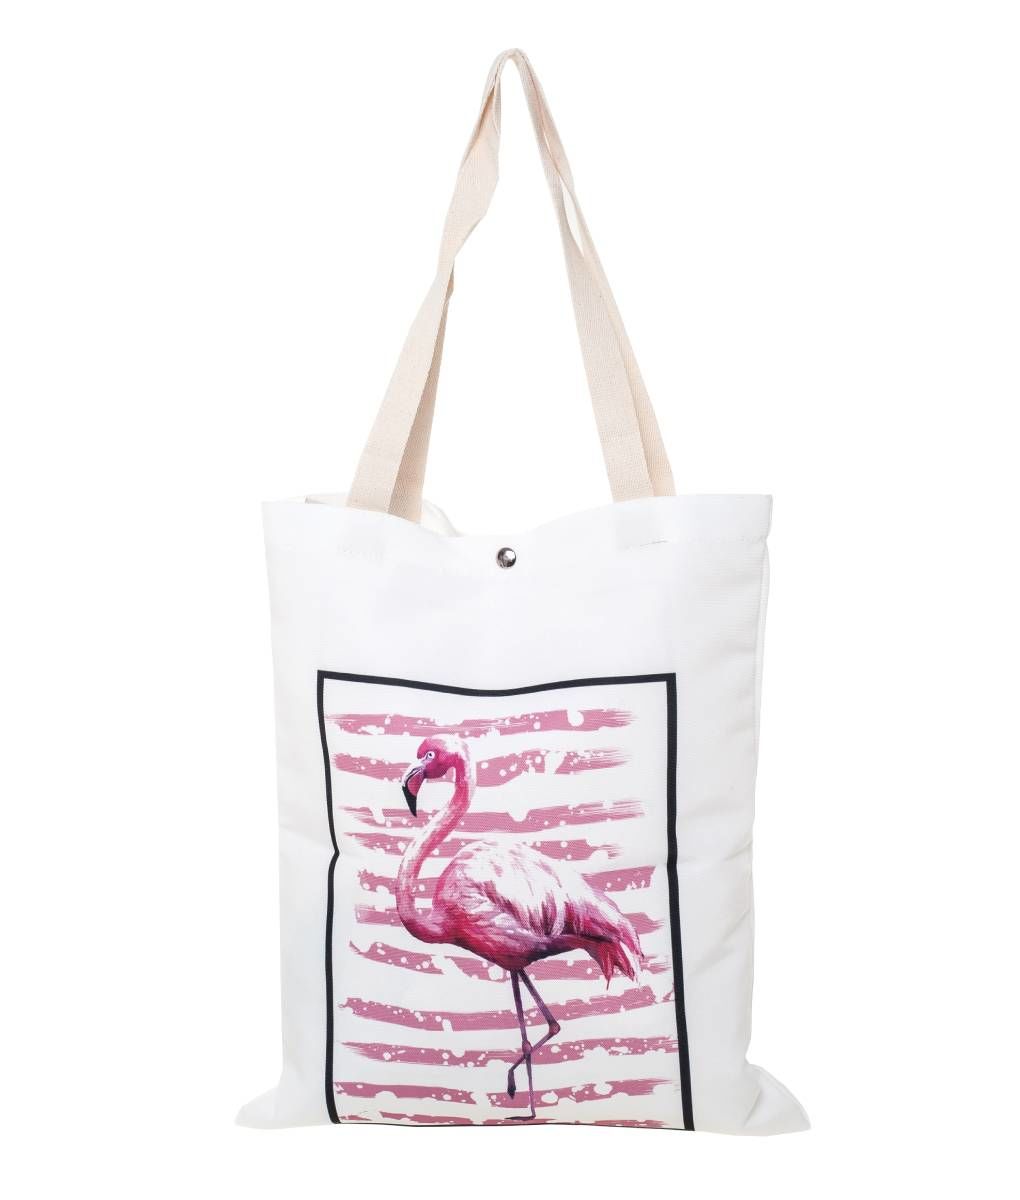 Shopper bag λευκή με σχέδιο flamingo